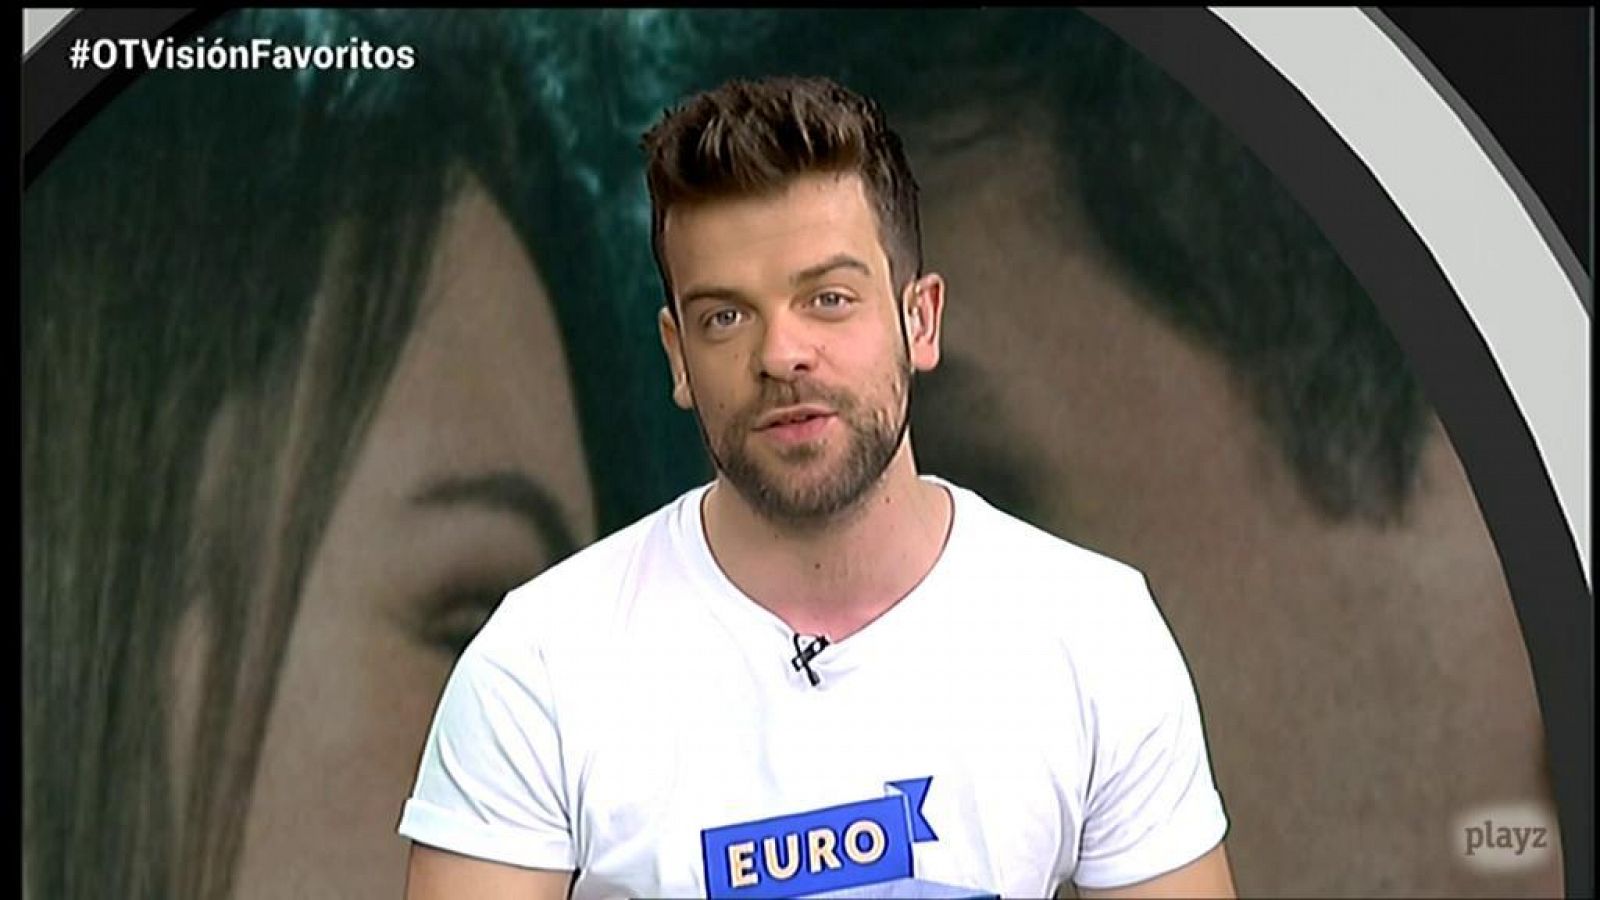 OTVisión - Ricky nos habla del Top 5 en las apuestas de Eurovisión